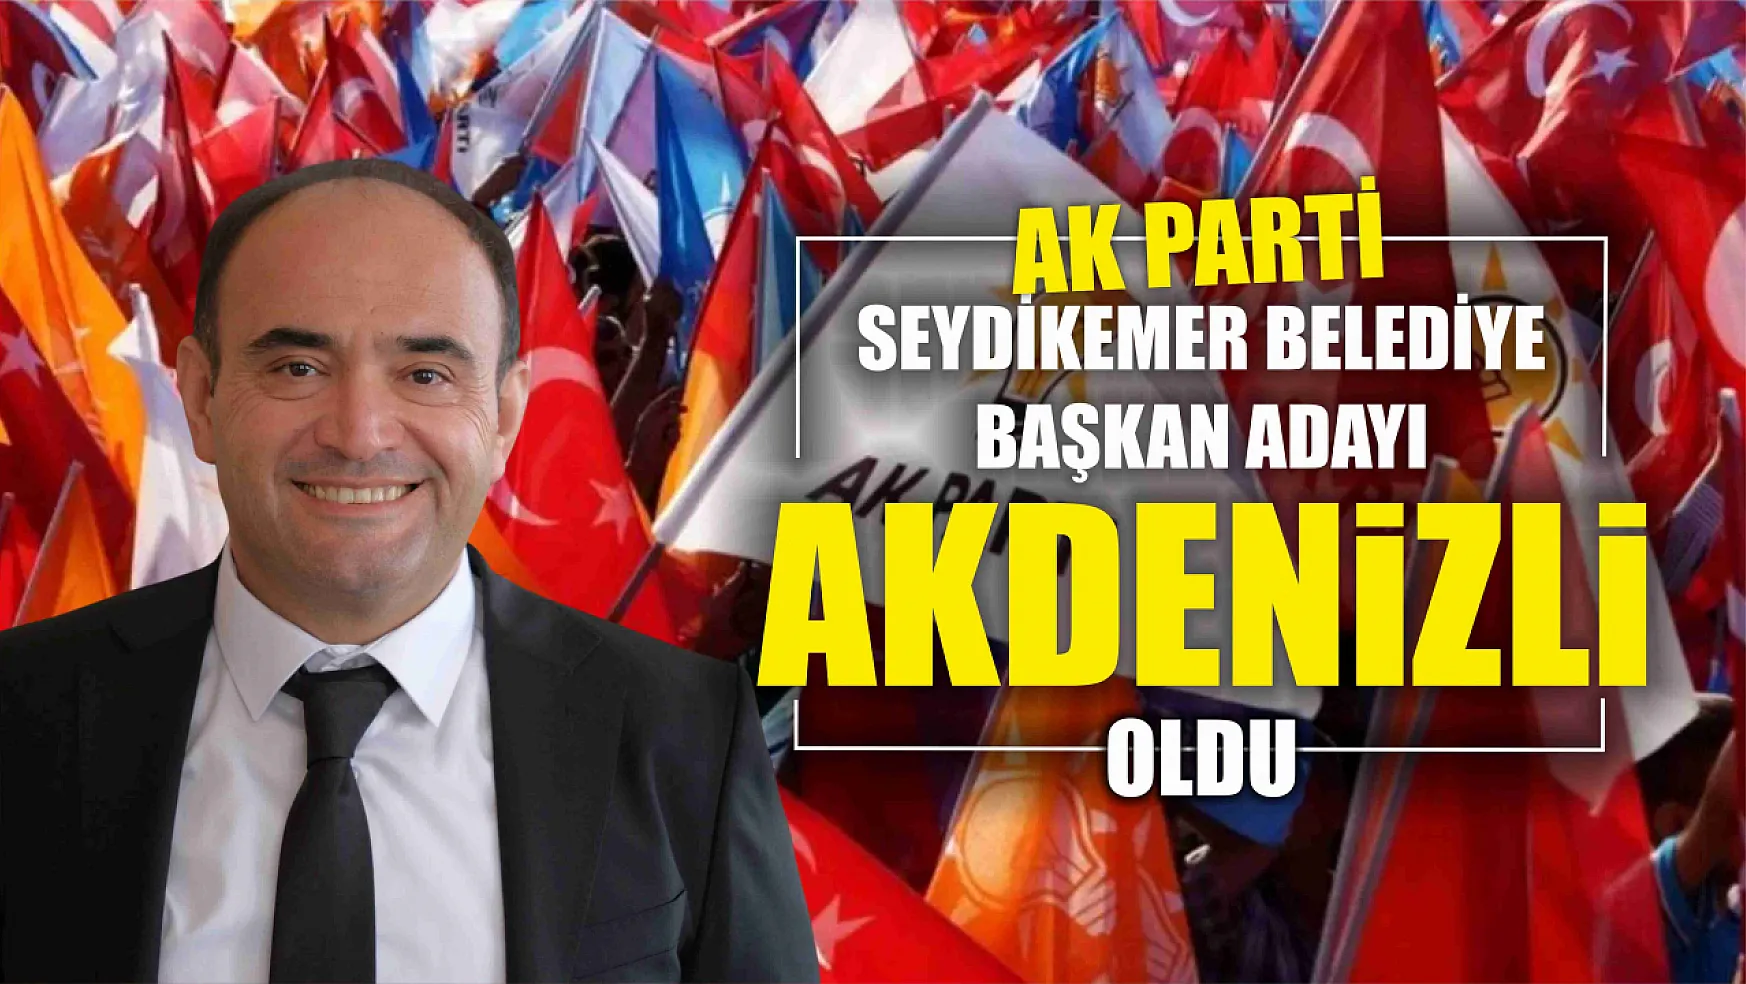 AK Parti Seydikemer Belediye Başkan Adayı Akdenizli Oldu